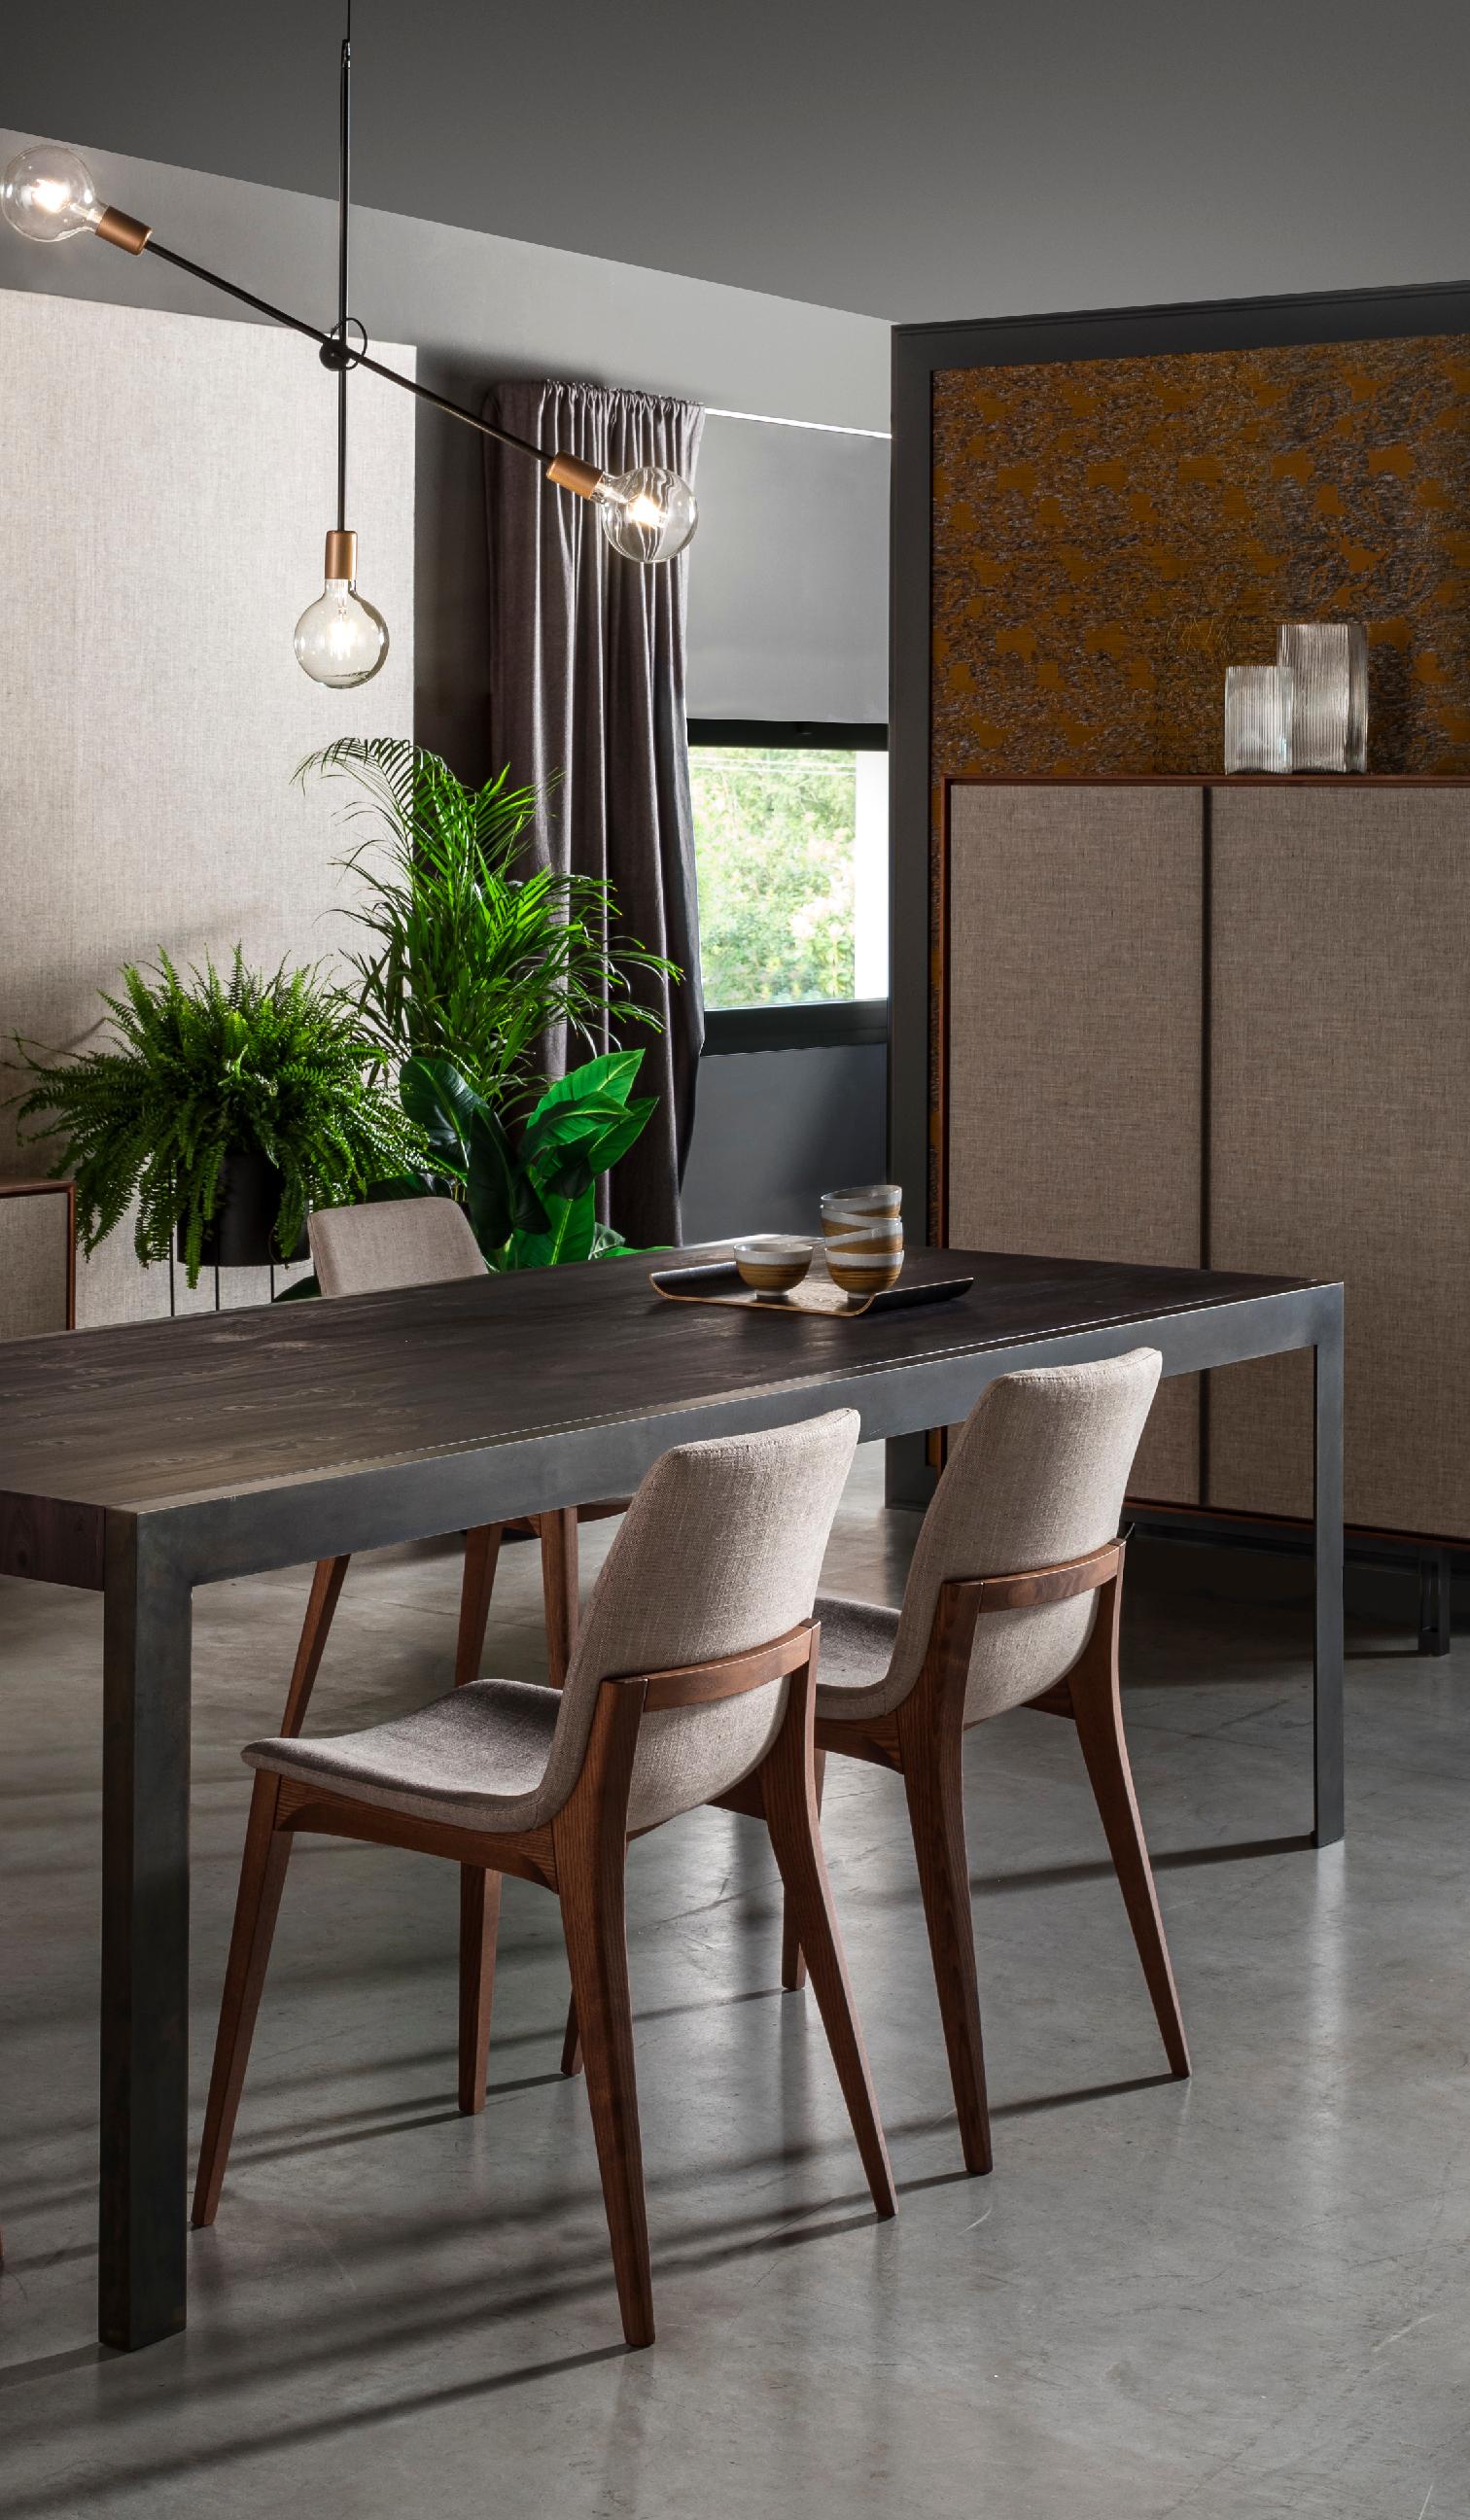 4 Contemporary Studio Tecnico Interna8 2x Chairs Wood Fabric In New Condition For Sale In Pordenone, IT